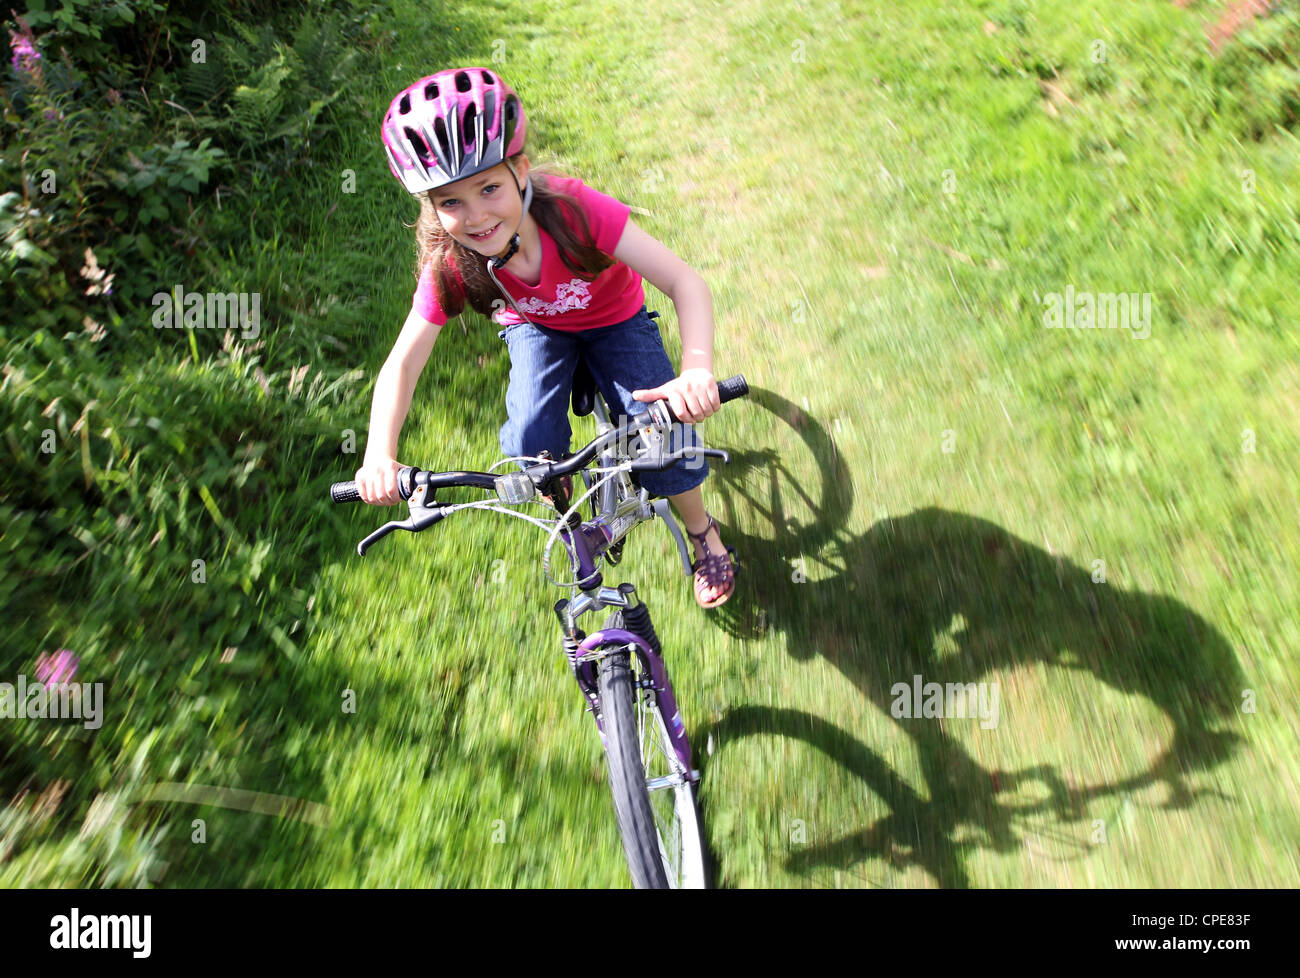 Une fille de 8 ans, bénéficie d'une promenade en vélo à travers la campagne sur une journée ensoleillée. Banque D'Images